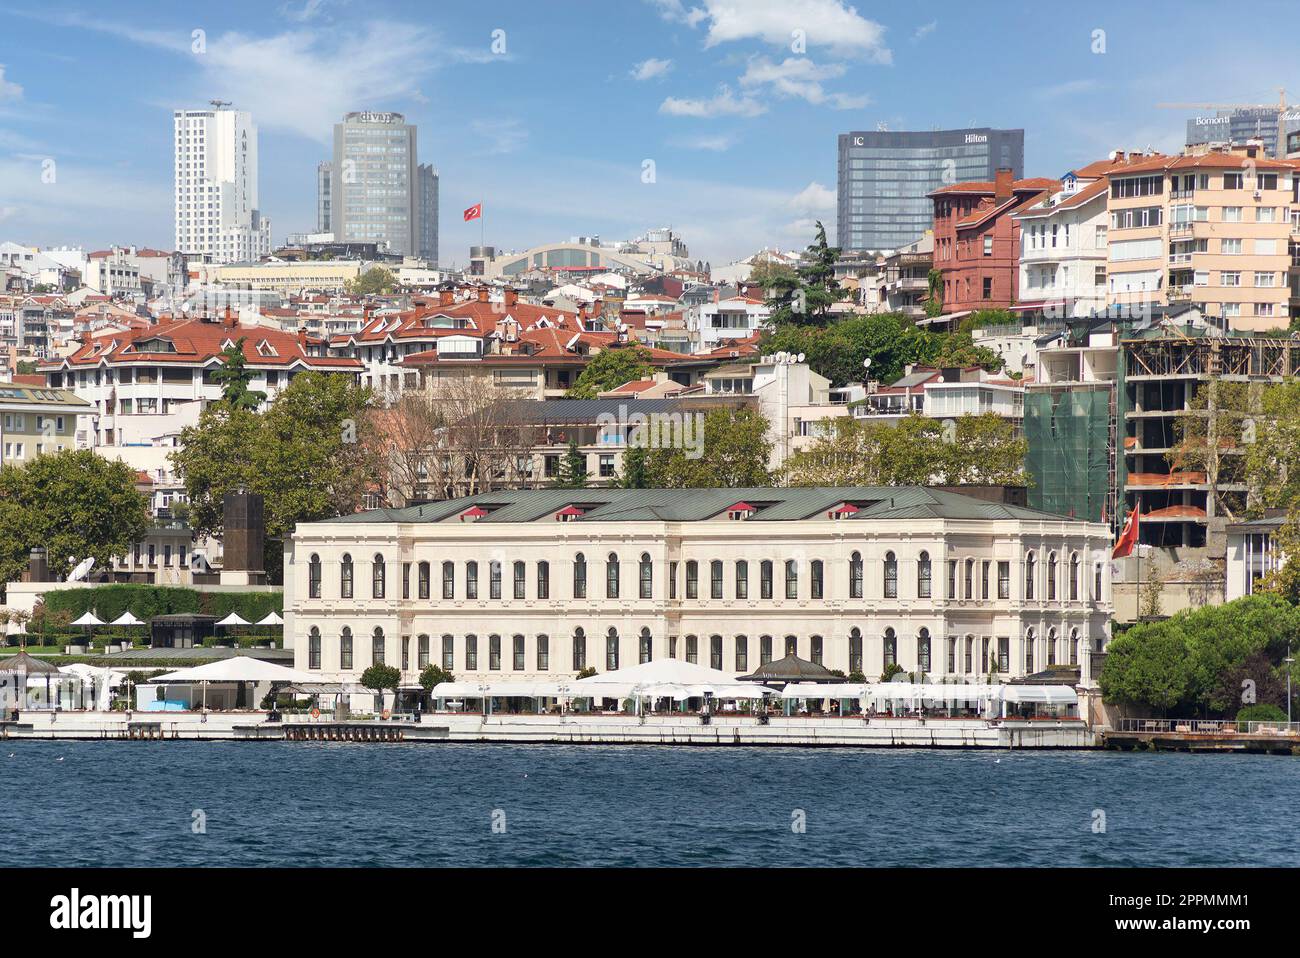 Edificio alberghiero a cinque stelle dal design architettonico moderno, adatto al Bosforo, a Besiktas, in un giorno d'estate, Istanbul, Turchia Foto Stock